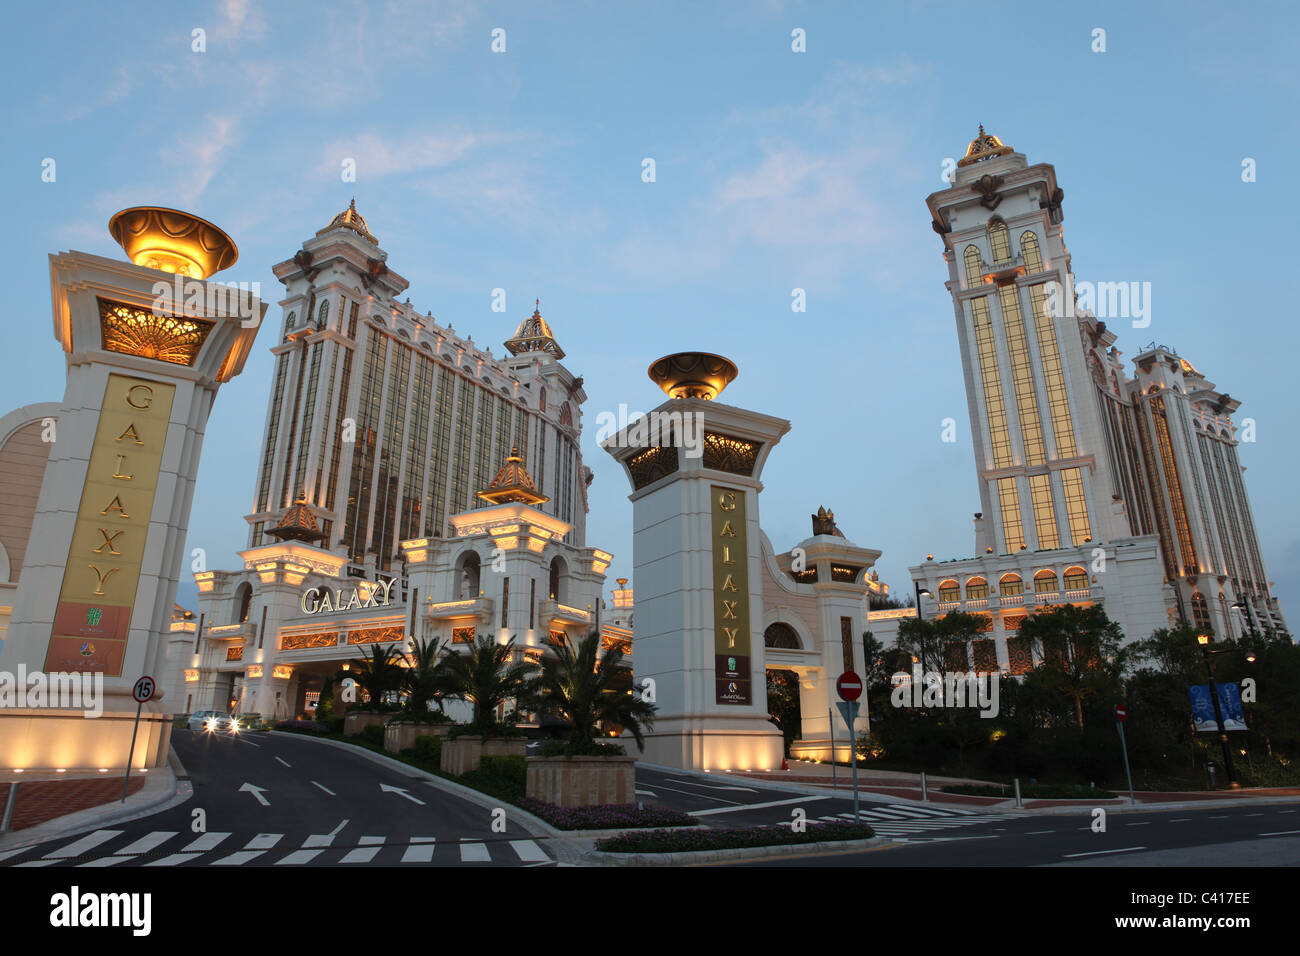 Galaxy Resort Casino, Macau Stock Photo